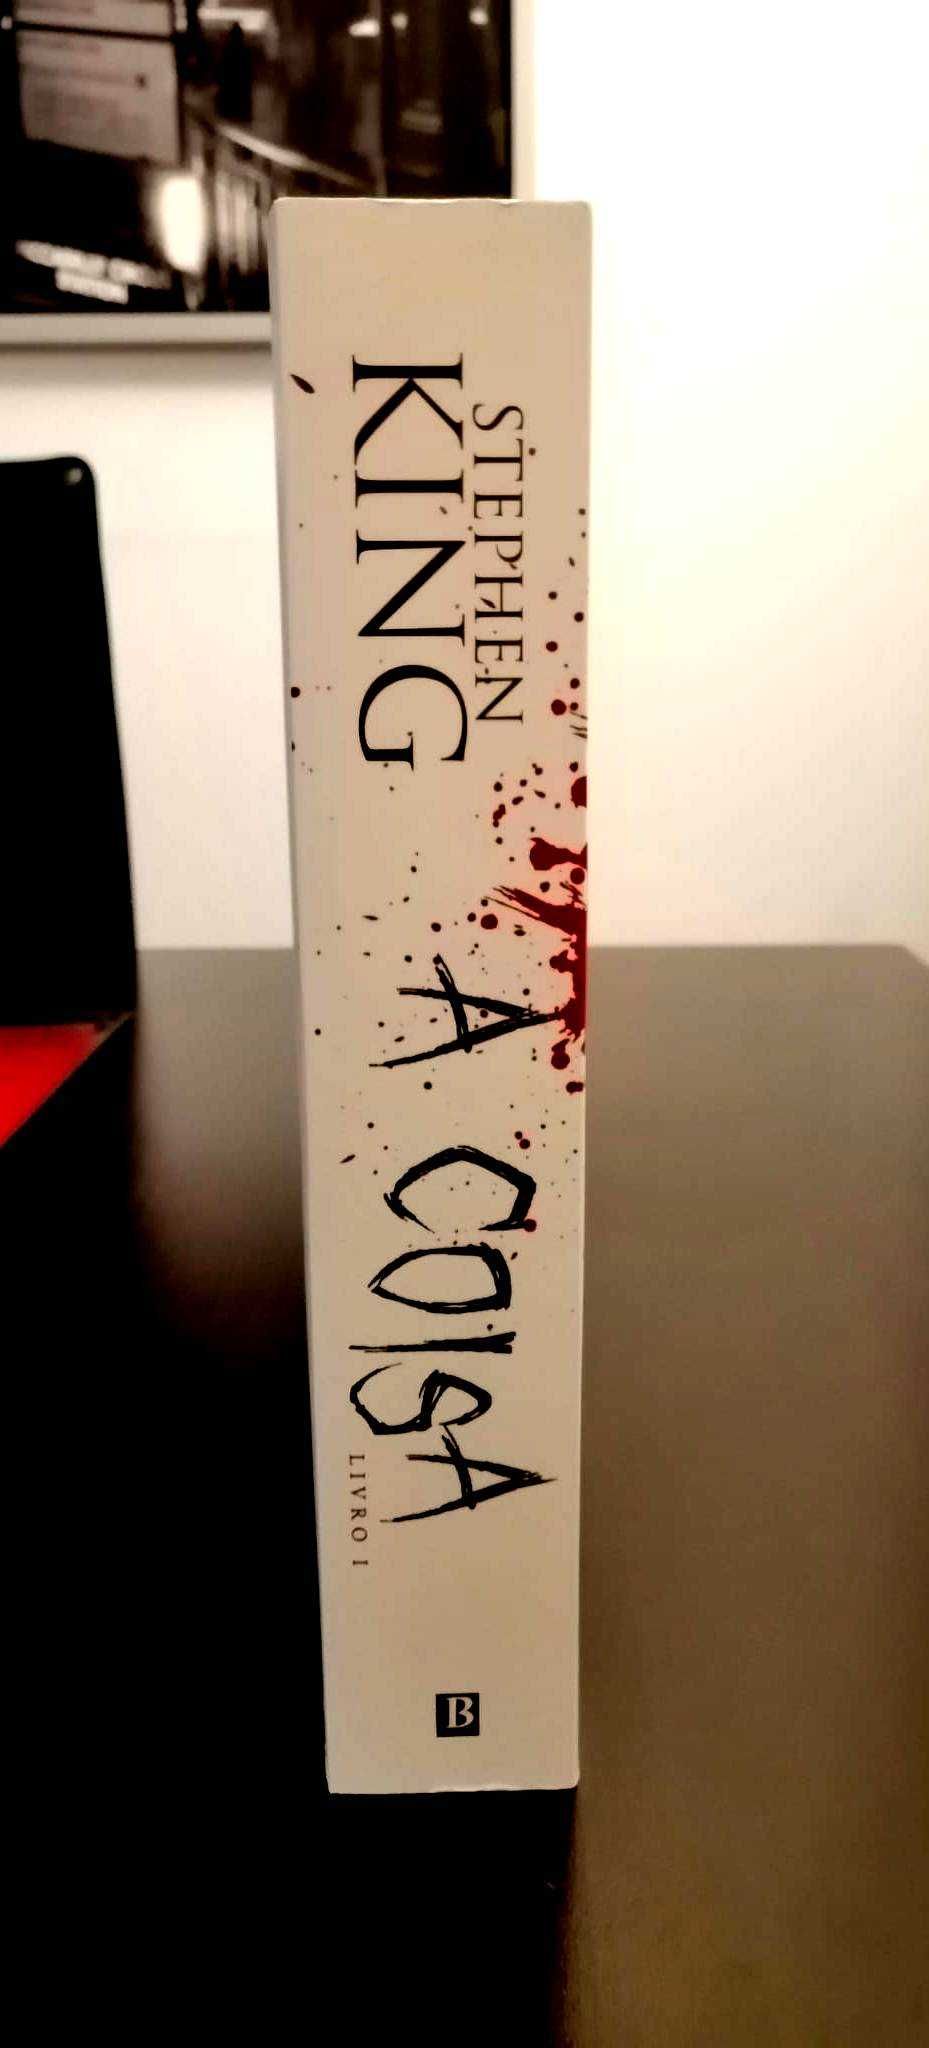 Stephen King - IT, a Coisa / ed. BRASIL livro único / Portugal Vol. 1